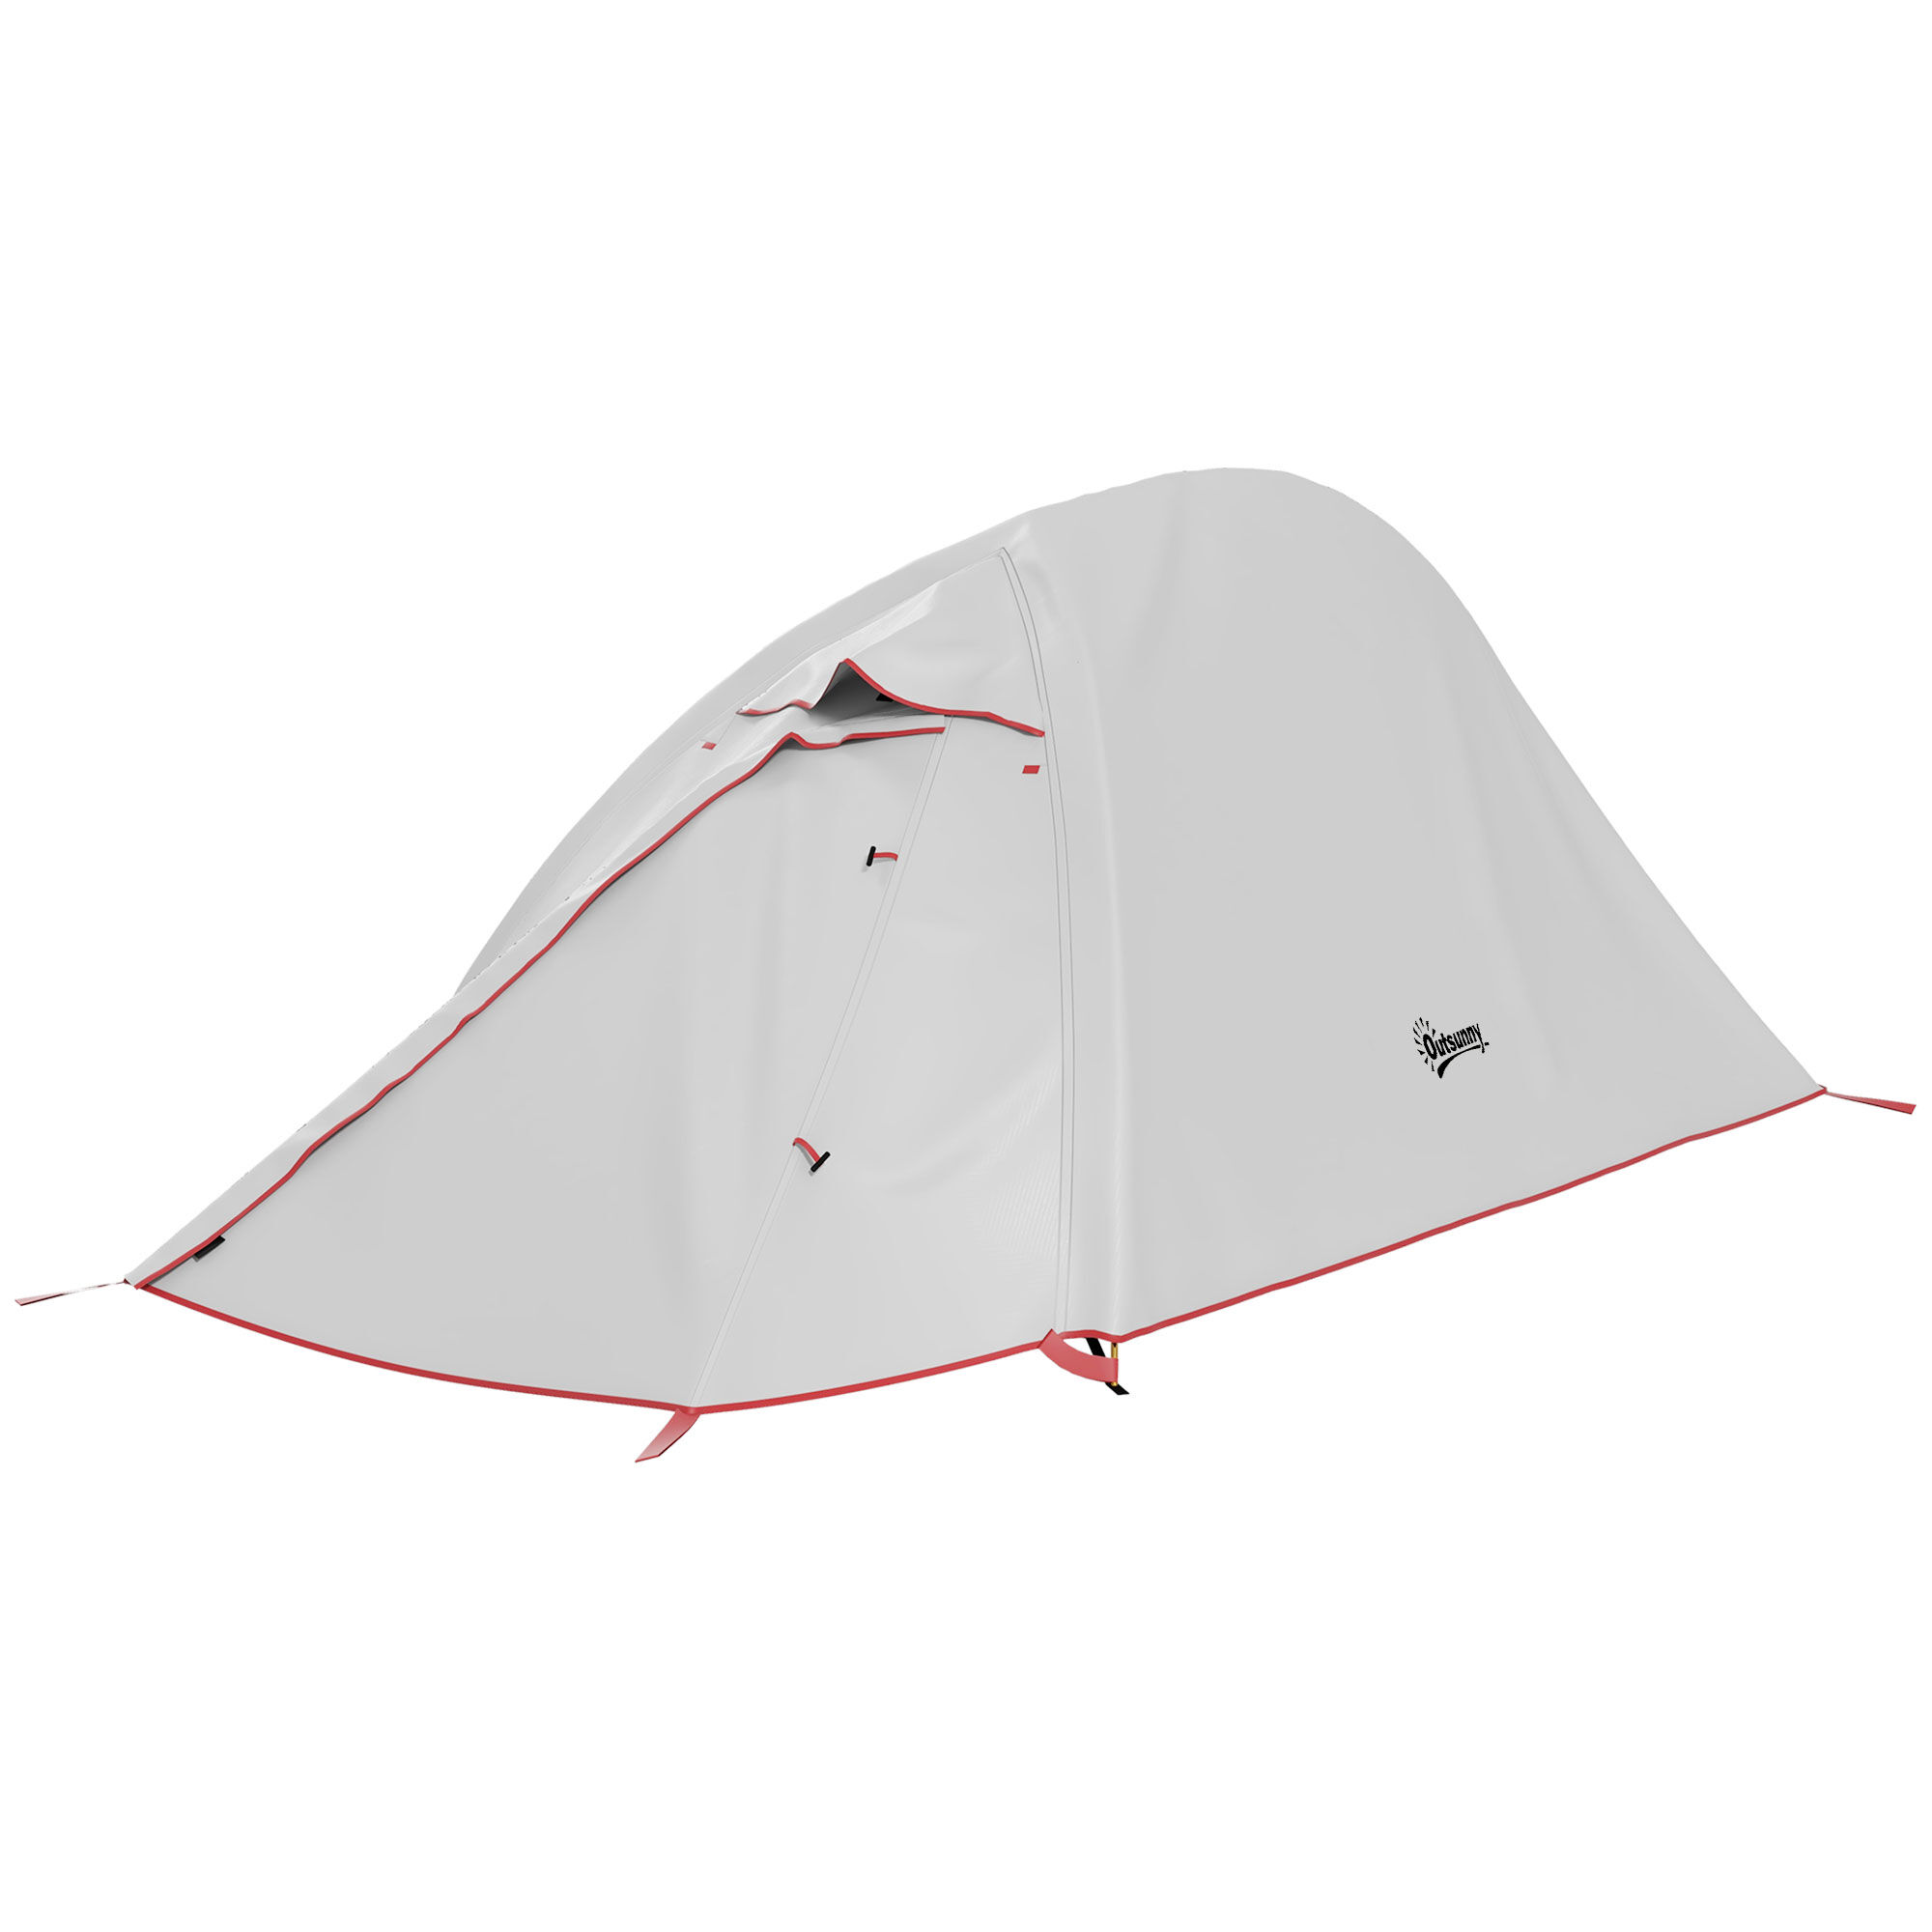 Outsunny Tenda da Campeggio 2 Posti con Borsa da Trasporto, in Poliestere e Alluminio, 300x135x110 cm, Grigio Chiaro